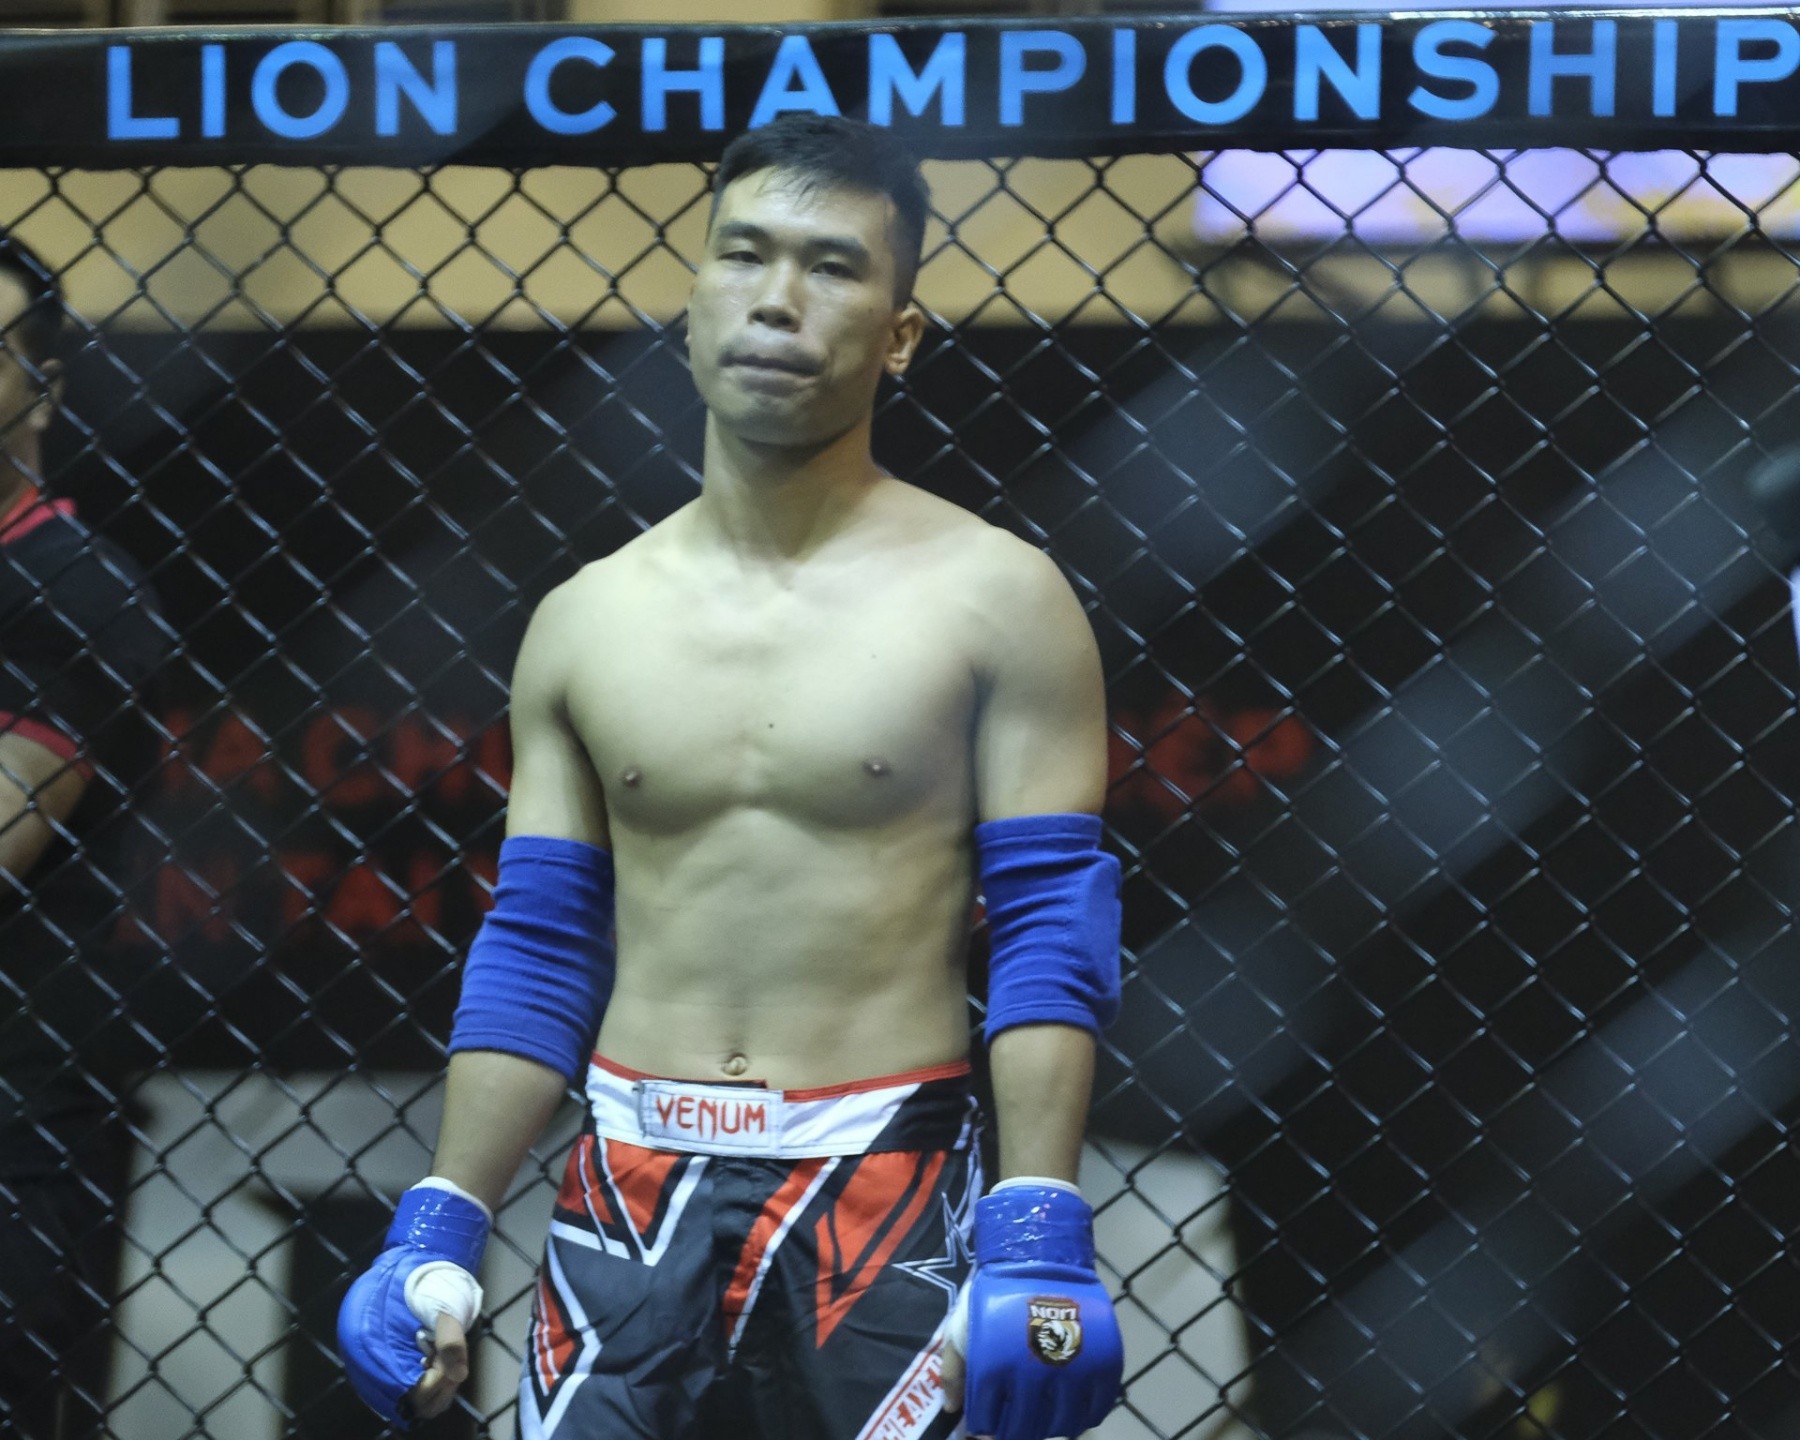 Võ sĩ Tán thủ thay thế “Quyền vương Thái Bình” đối đầu võ sĩ Hàn Quốc trên sàn MMA